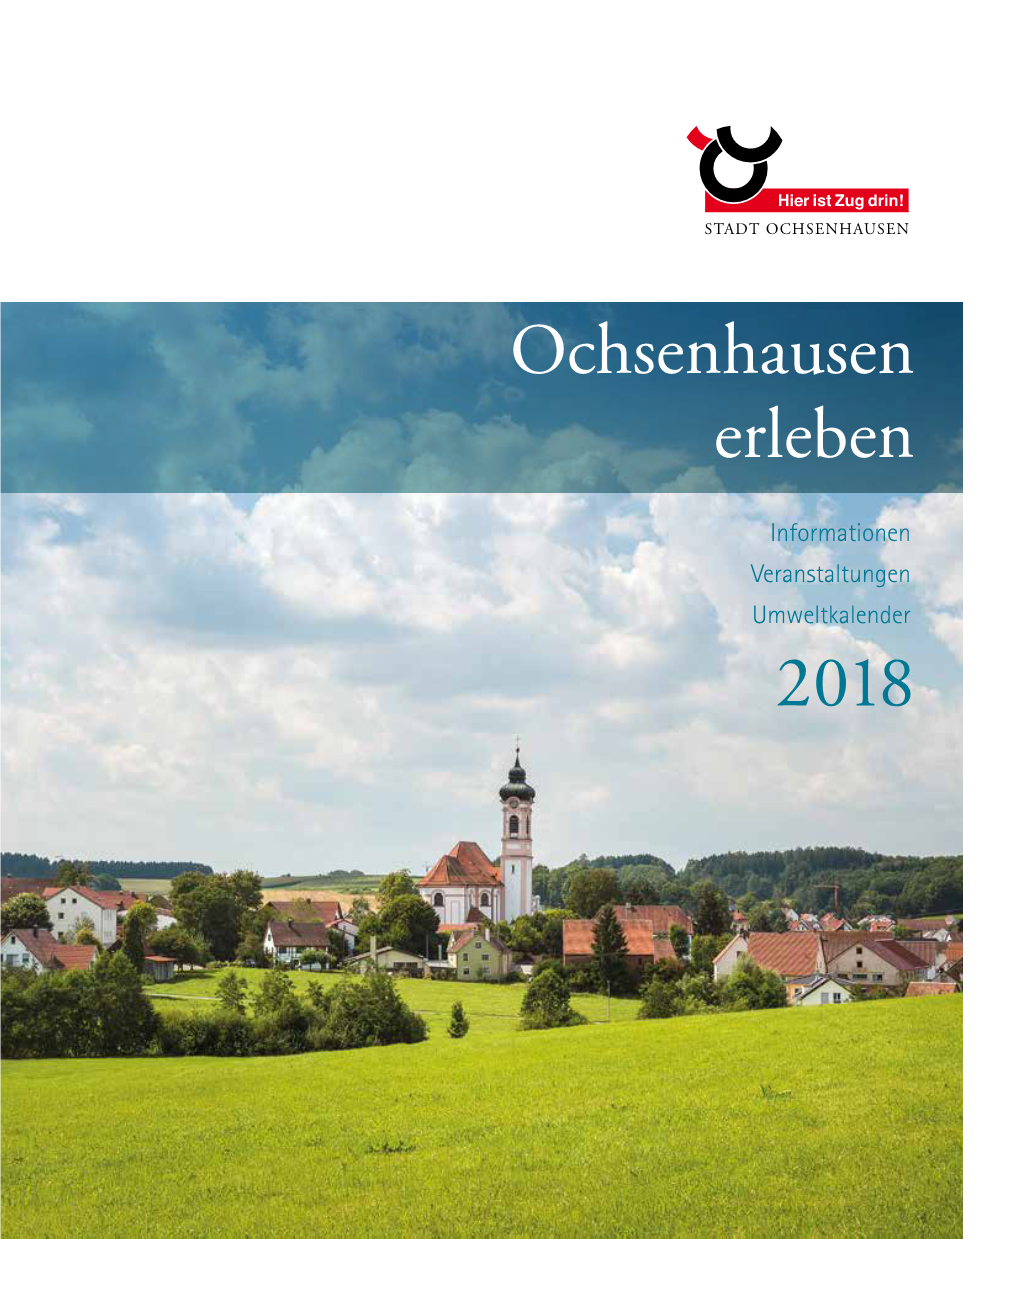 Ochsenhausen Erleben 2018“! Sem Jahr Wieder in Einer Ausstellung Vor Und Belohnen Die Besten Fotografen Mit Einem Ihr Preis